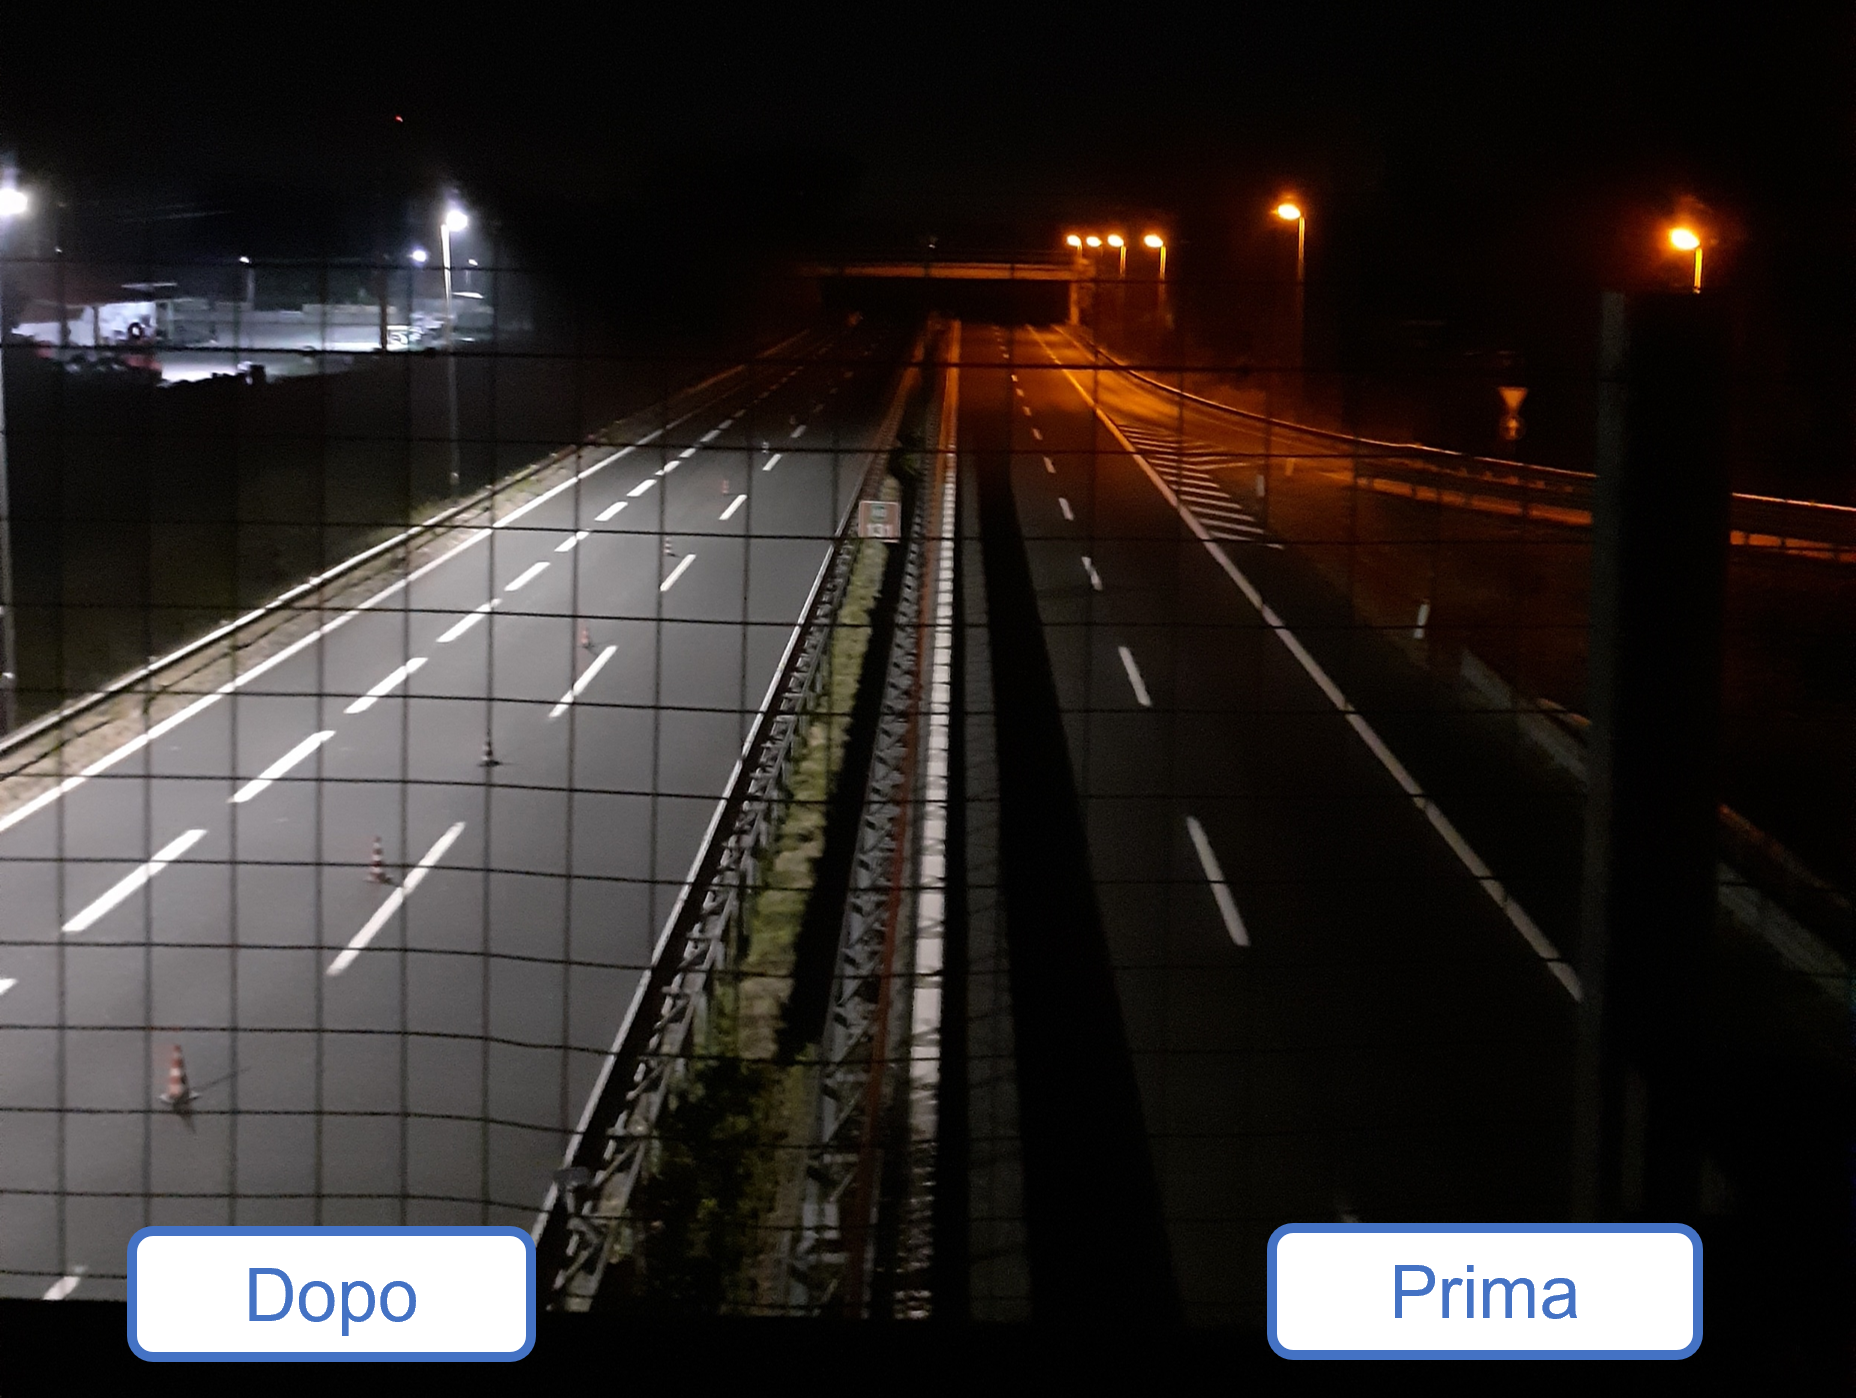 Autostrade per l'italia e l'illuminazione a led: salto verso l'efficienza energetica